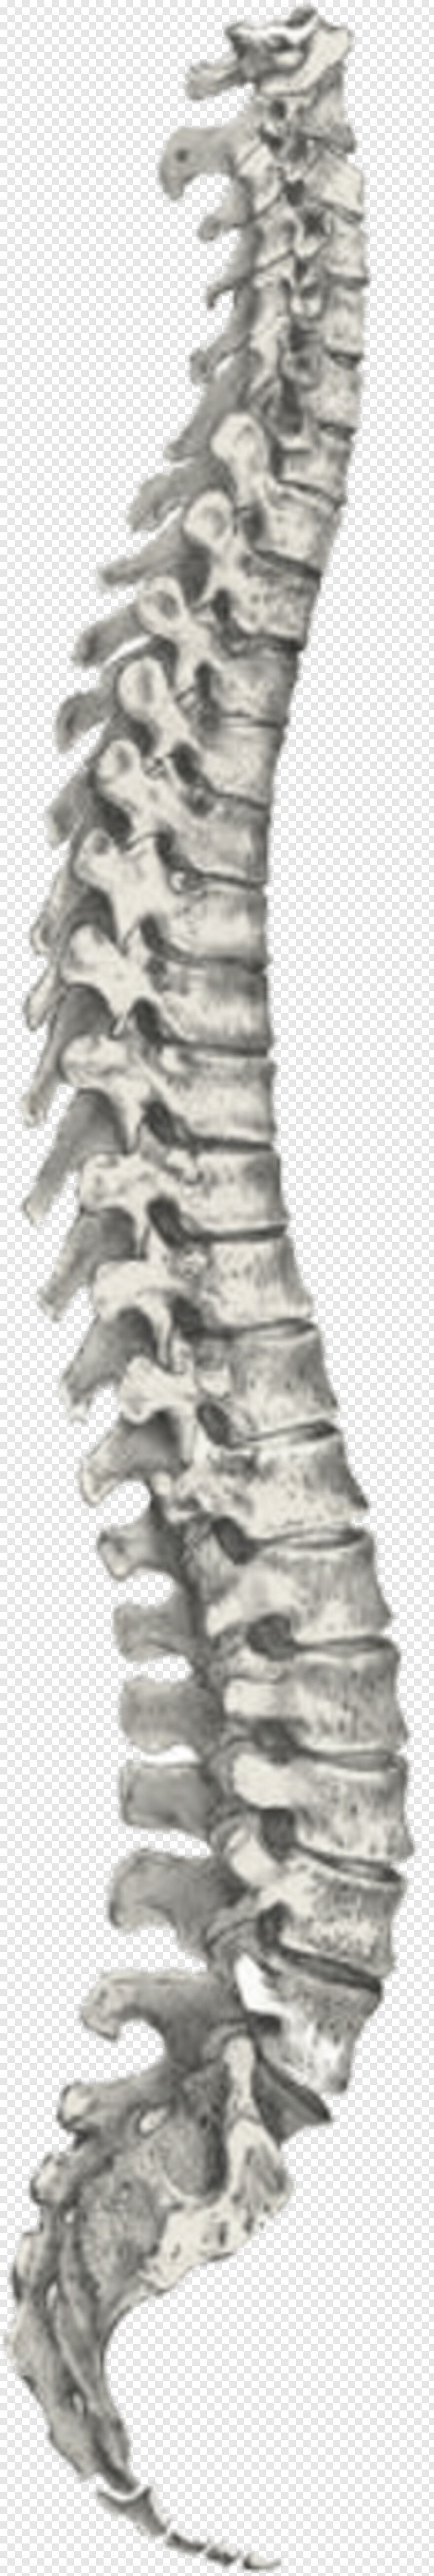 spine # 336026